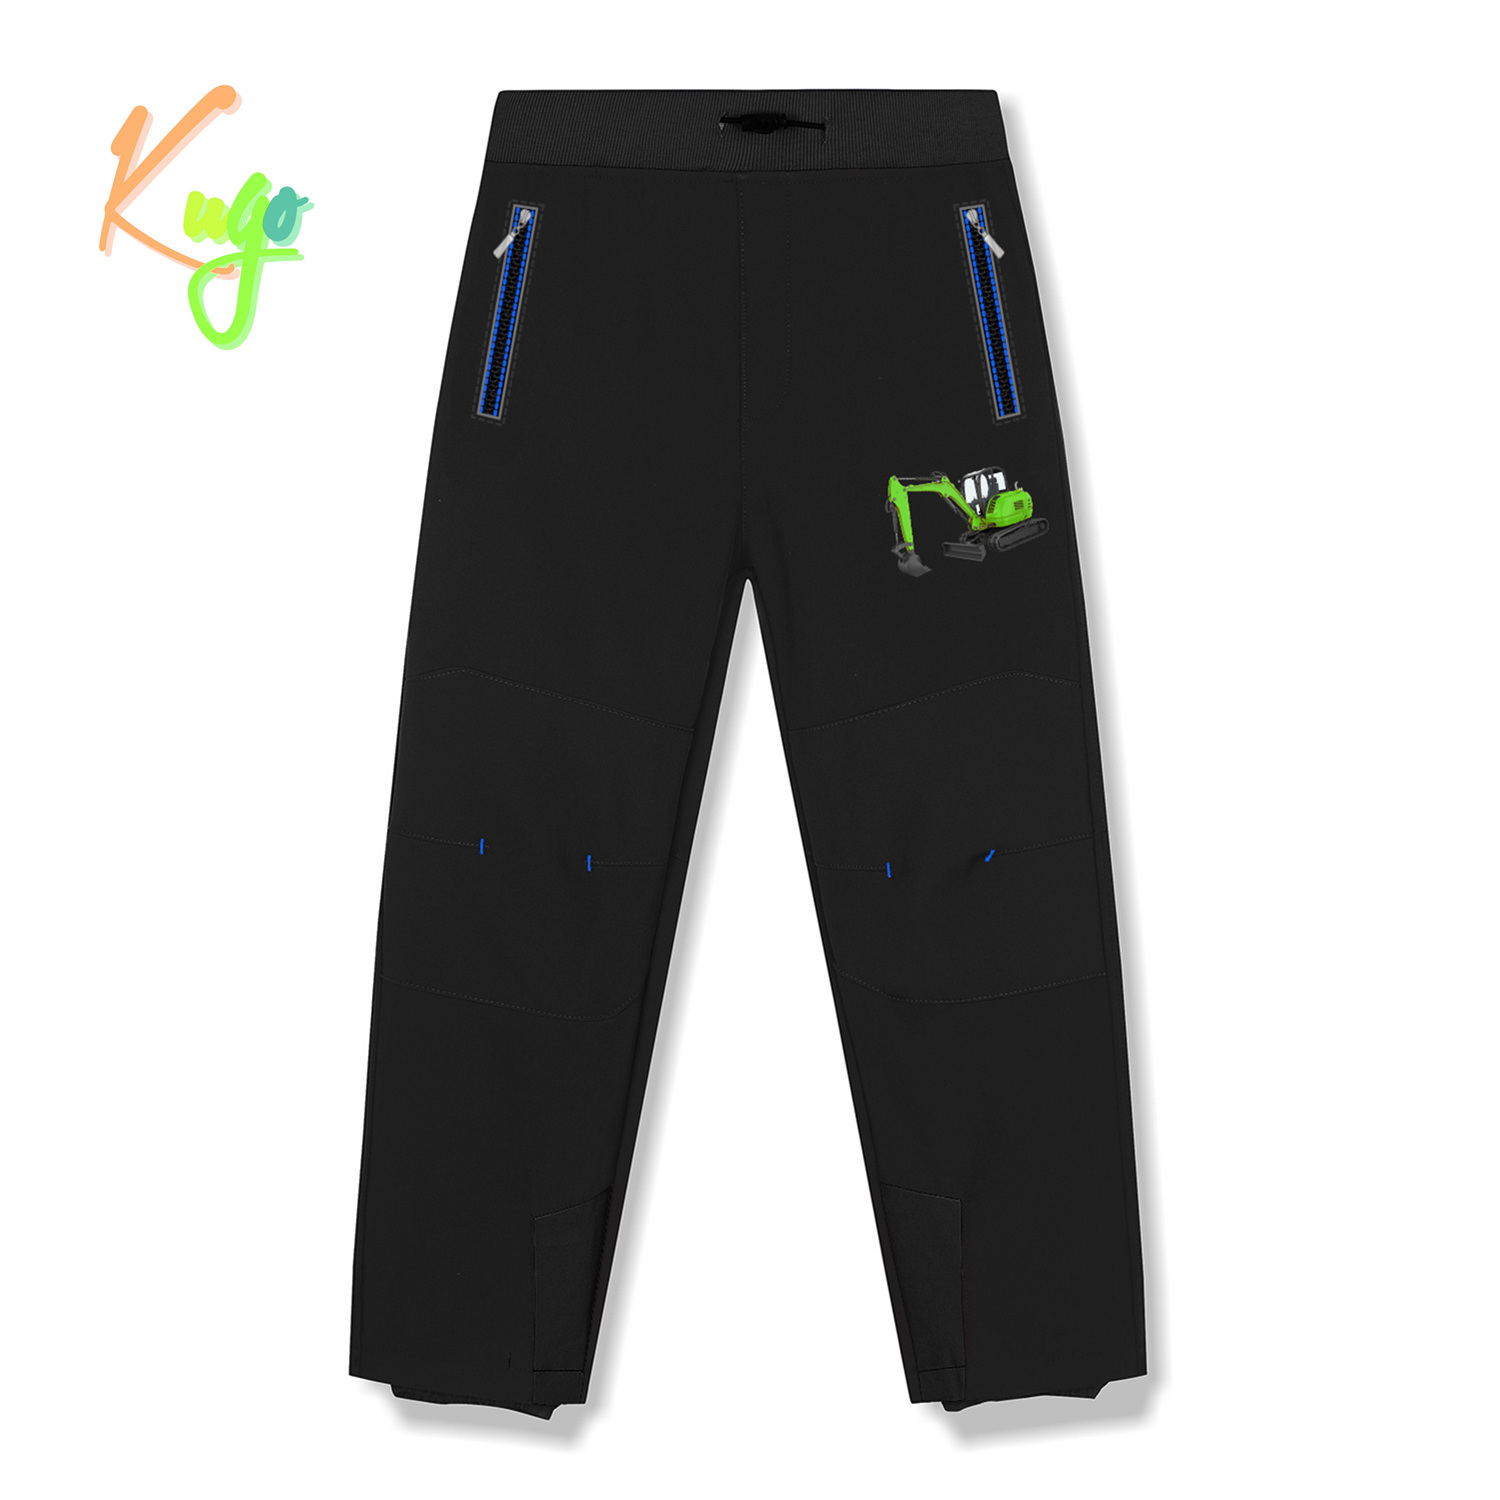 Chlapecké softshellové kalhoty, zateplené - KUGO HK5516, celočerná Barva: Černá, Velikost: 122